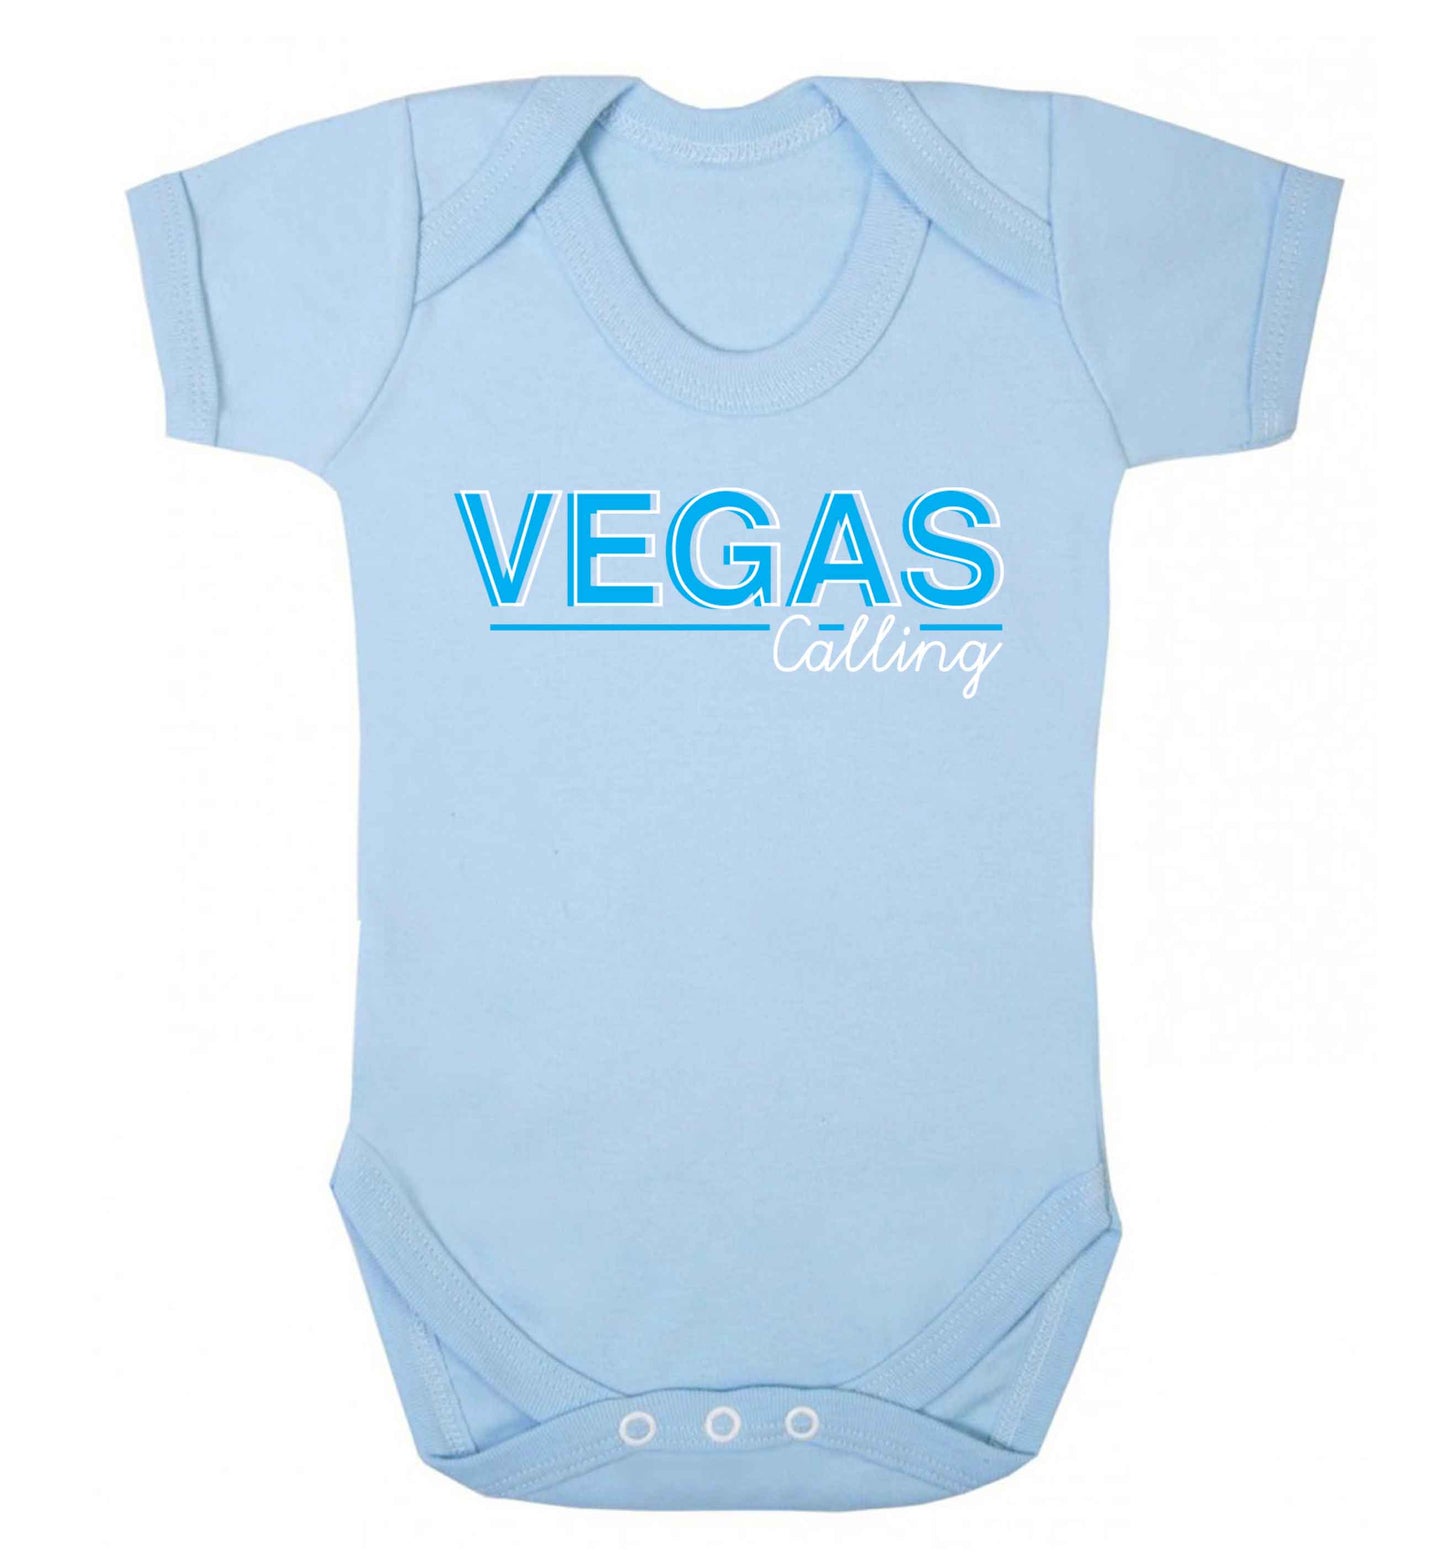 Vegas calling Baby Vest pale blue 18-24 months